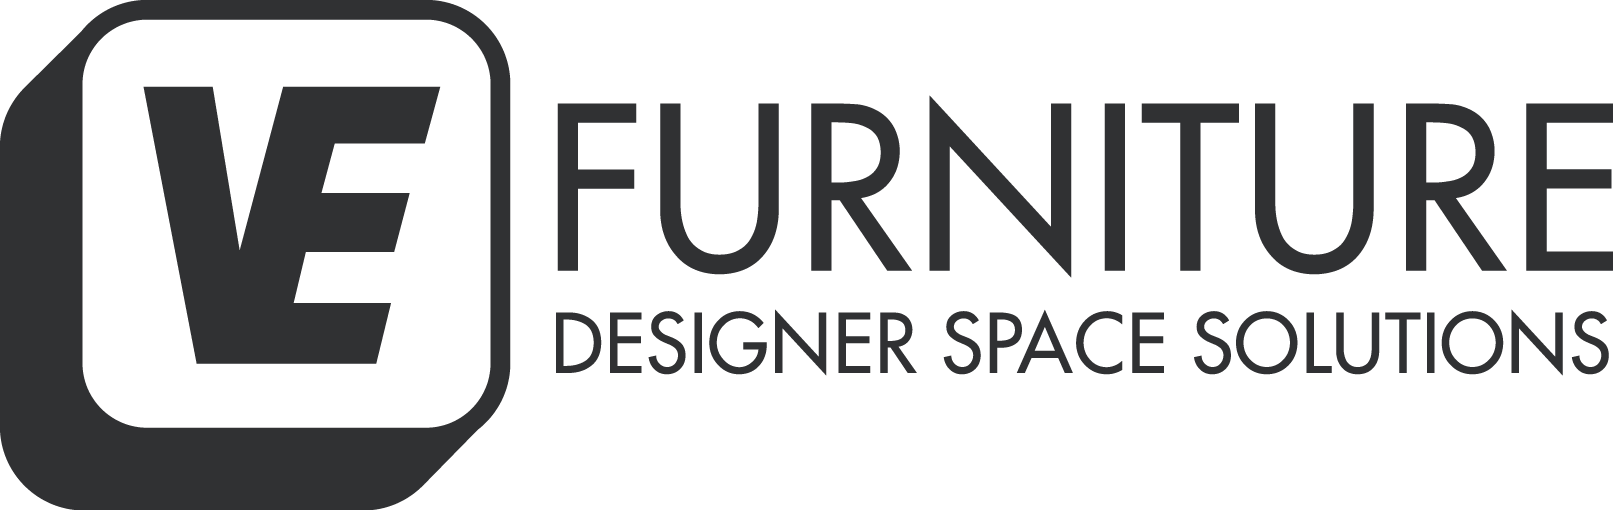 VE Furniture Logo